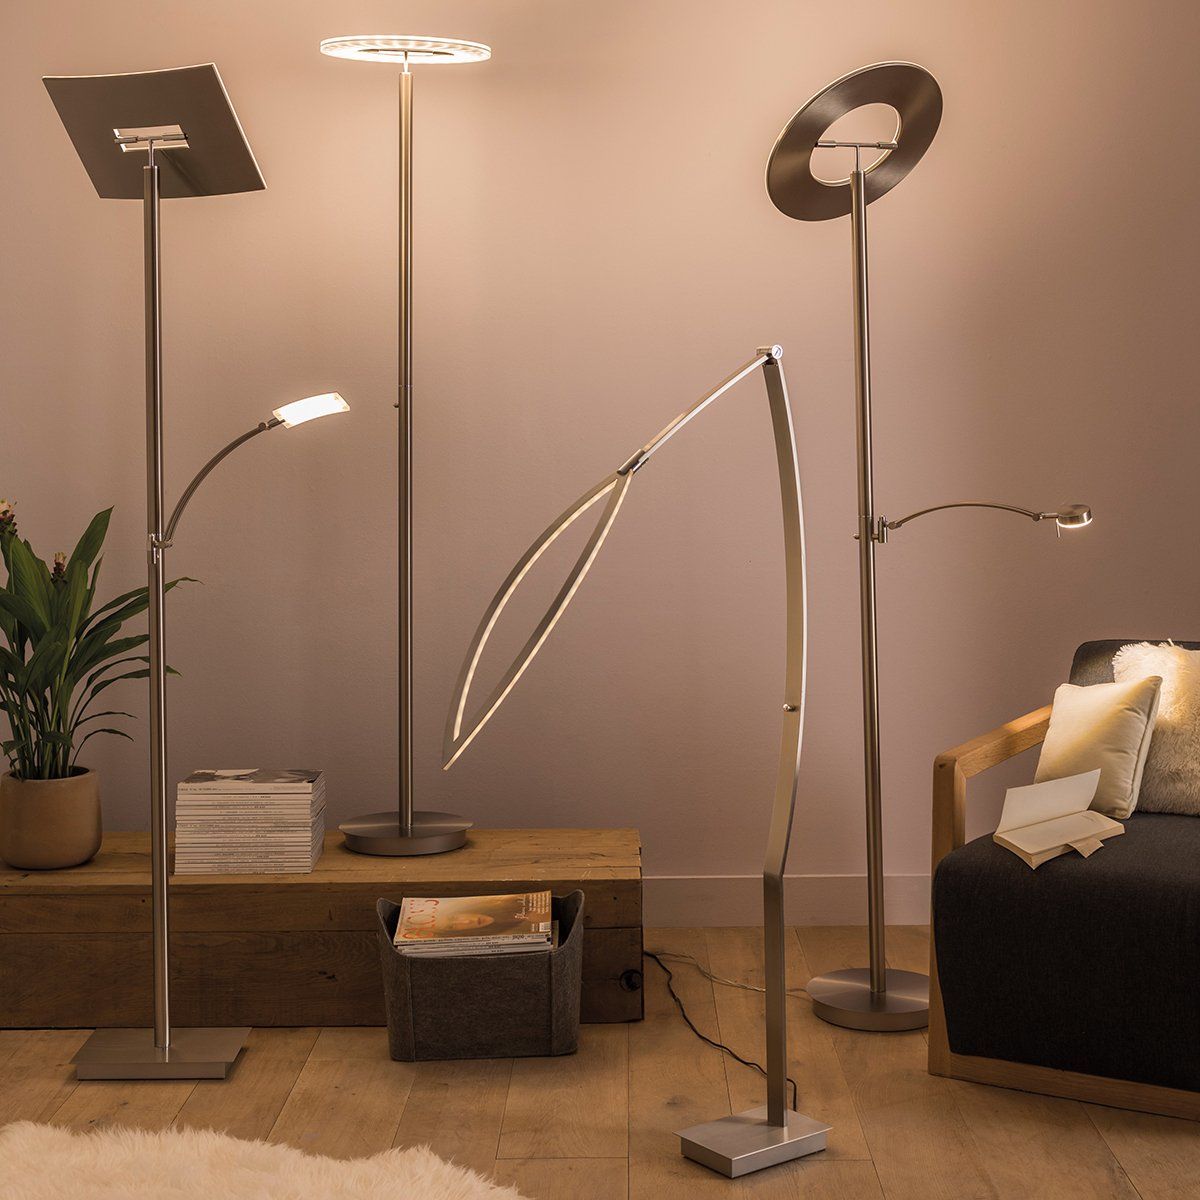 Lampes sur pied: éclairage indirect, luminaires design